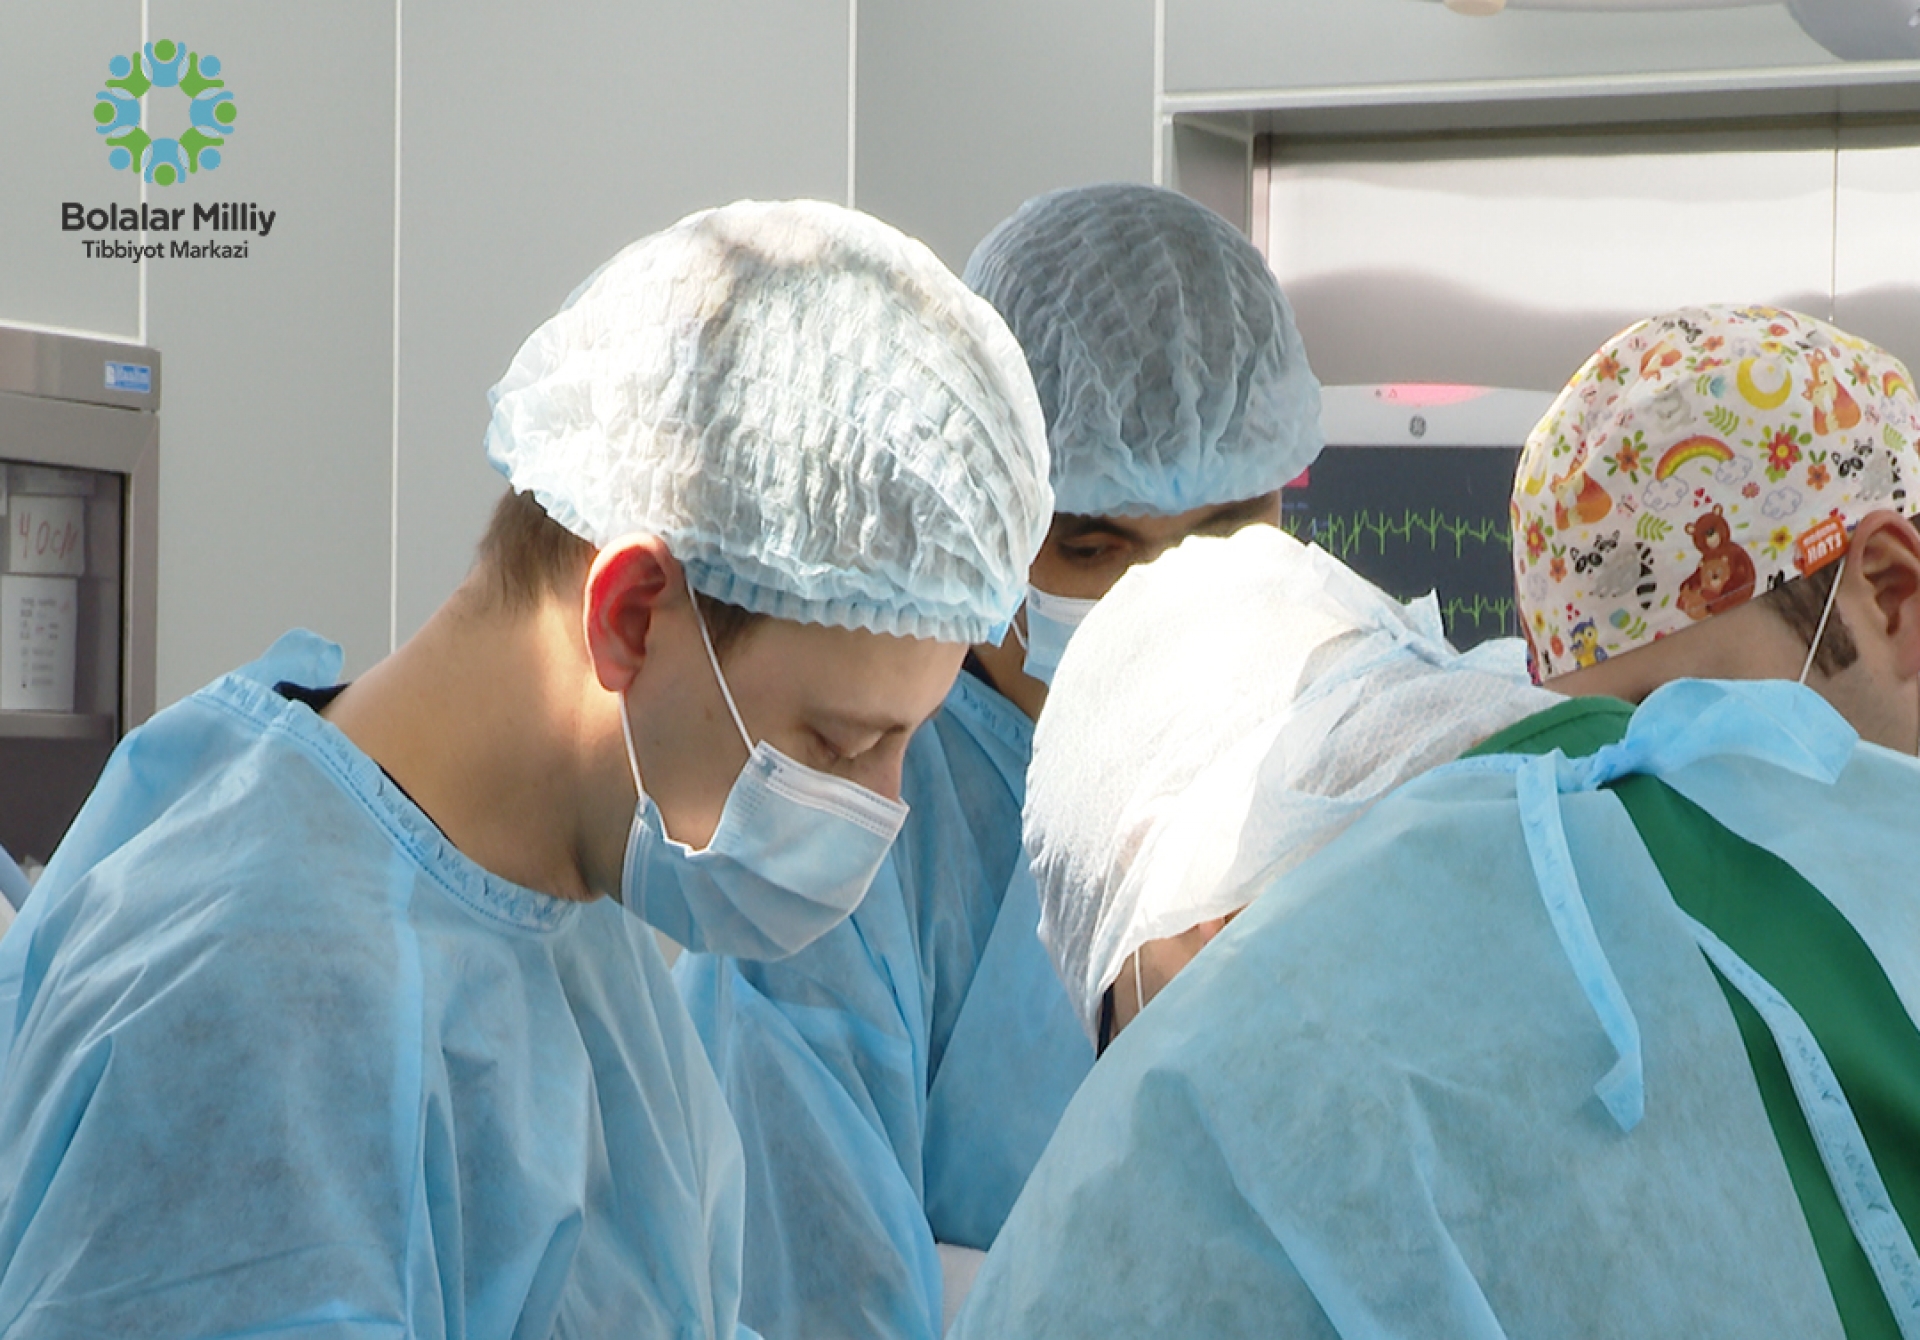 В ноябре 2022 года высококвалифицированные специалисты из разных стран мира совместно с нашими врачами в Детском национальном медицинском центре провели высокотехнологичные хирургические операции